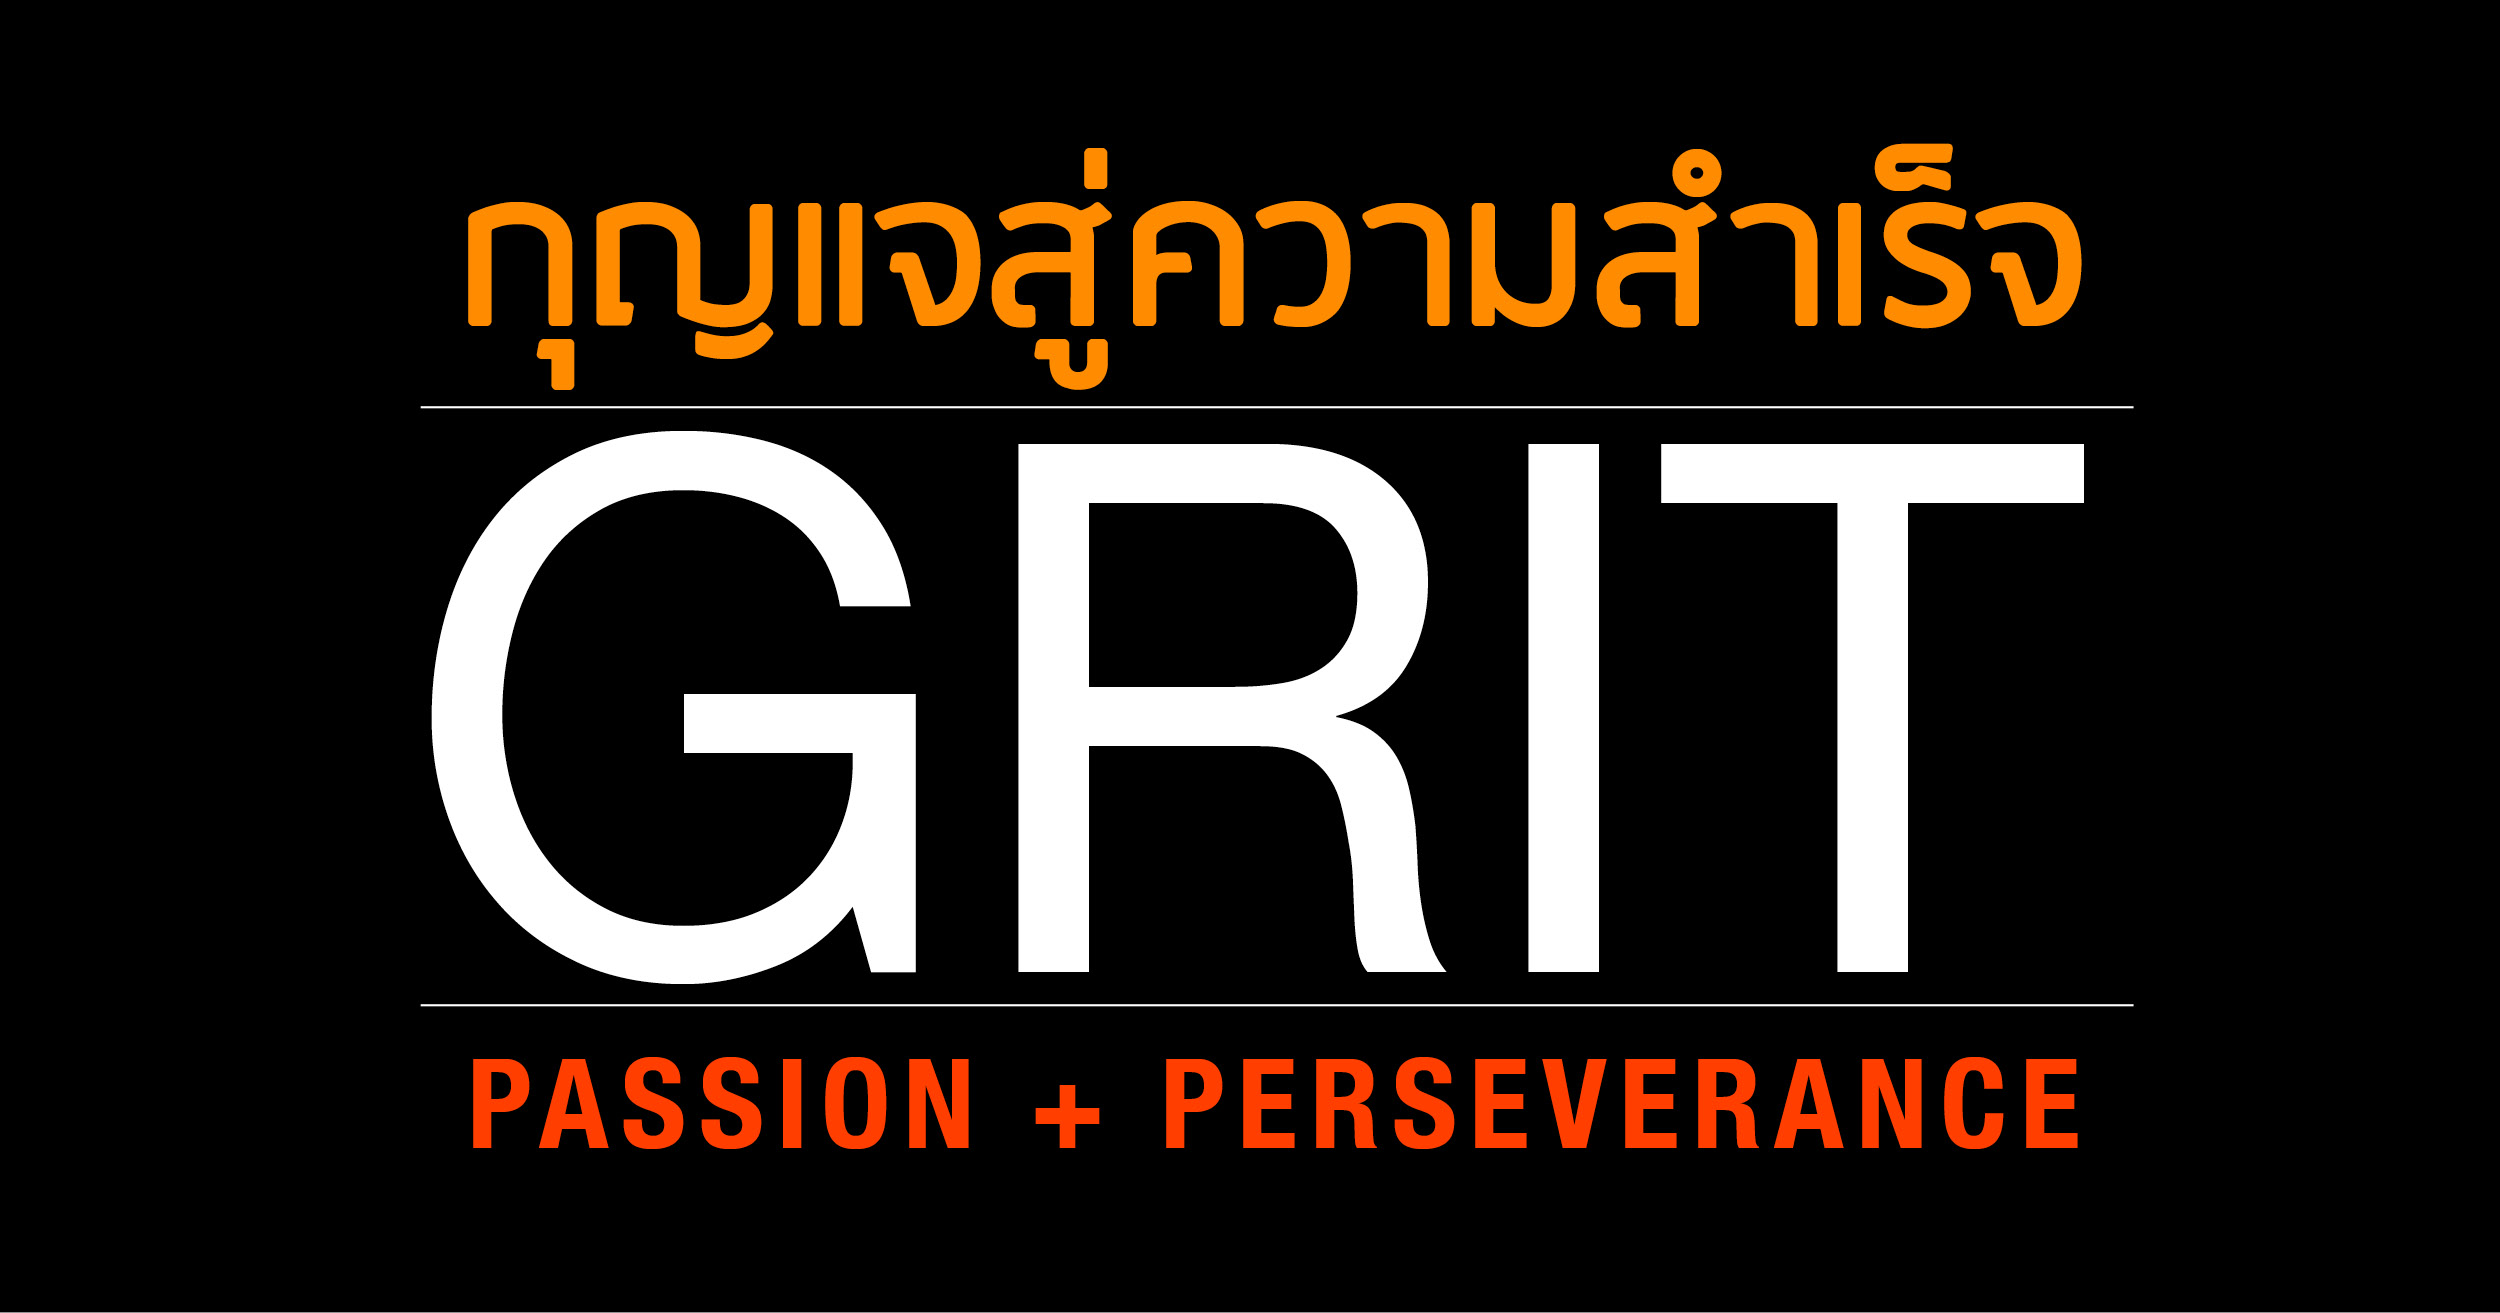 กุญแจในการประสบความสำเร็จ คือ GRIT !! Passion + Perseverance DREAM ACTION